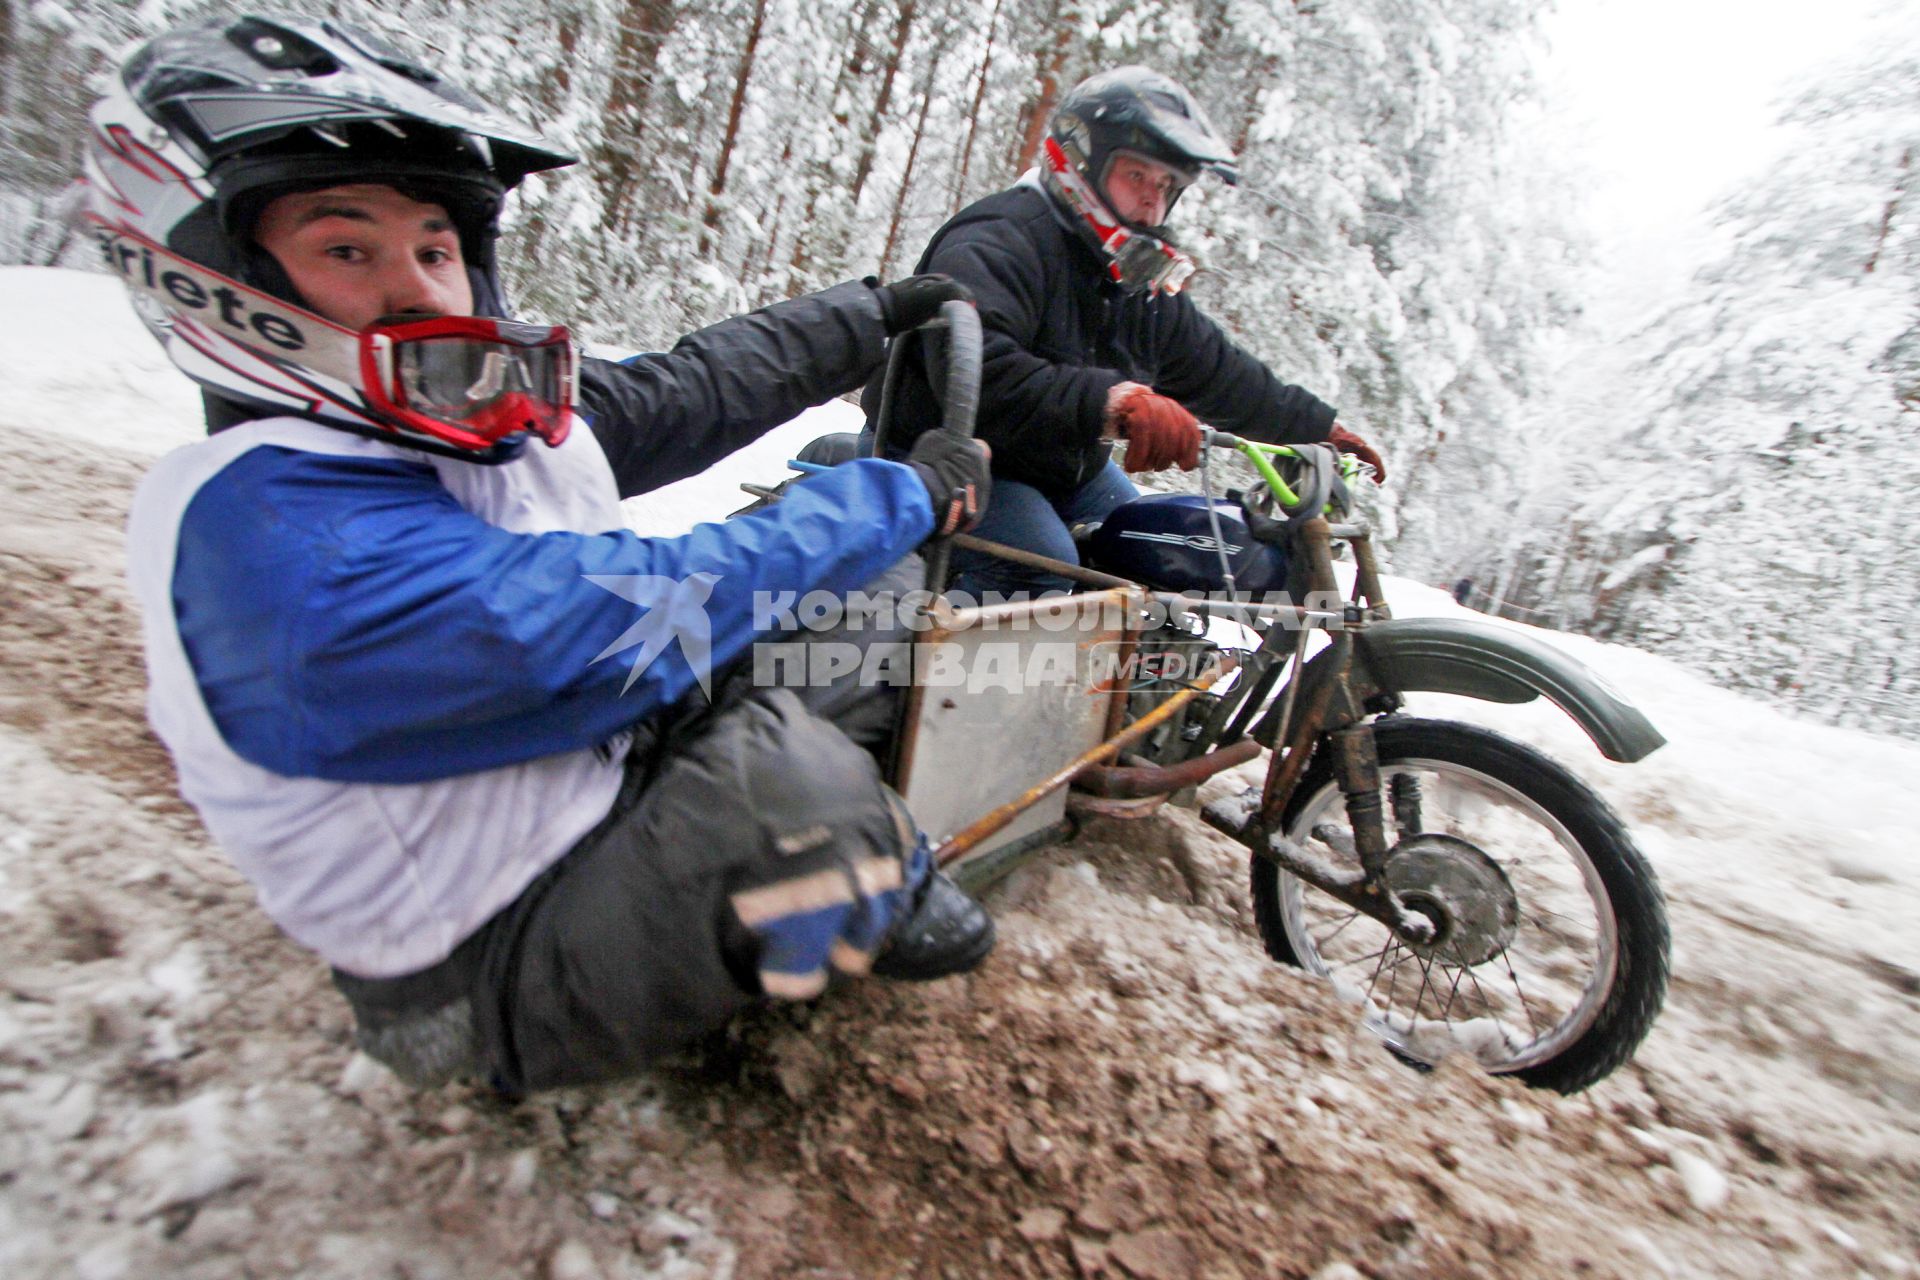 Зимний мотофестиваль `Завируха-2013`. На снимке: участники соревнований на мотоцикле с коляской.